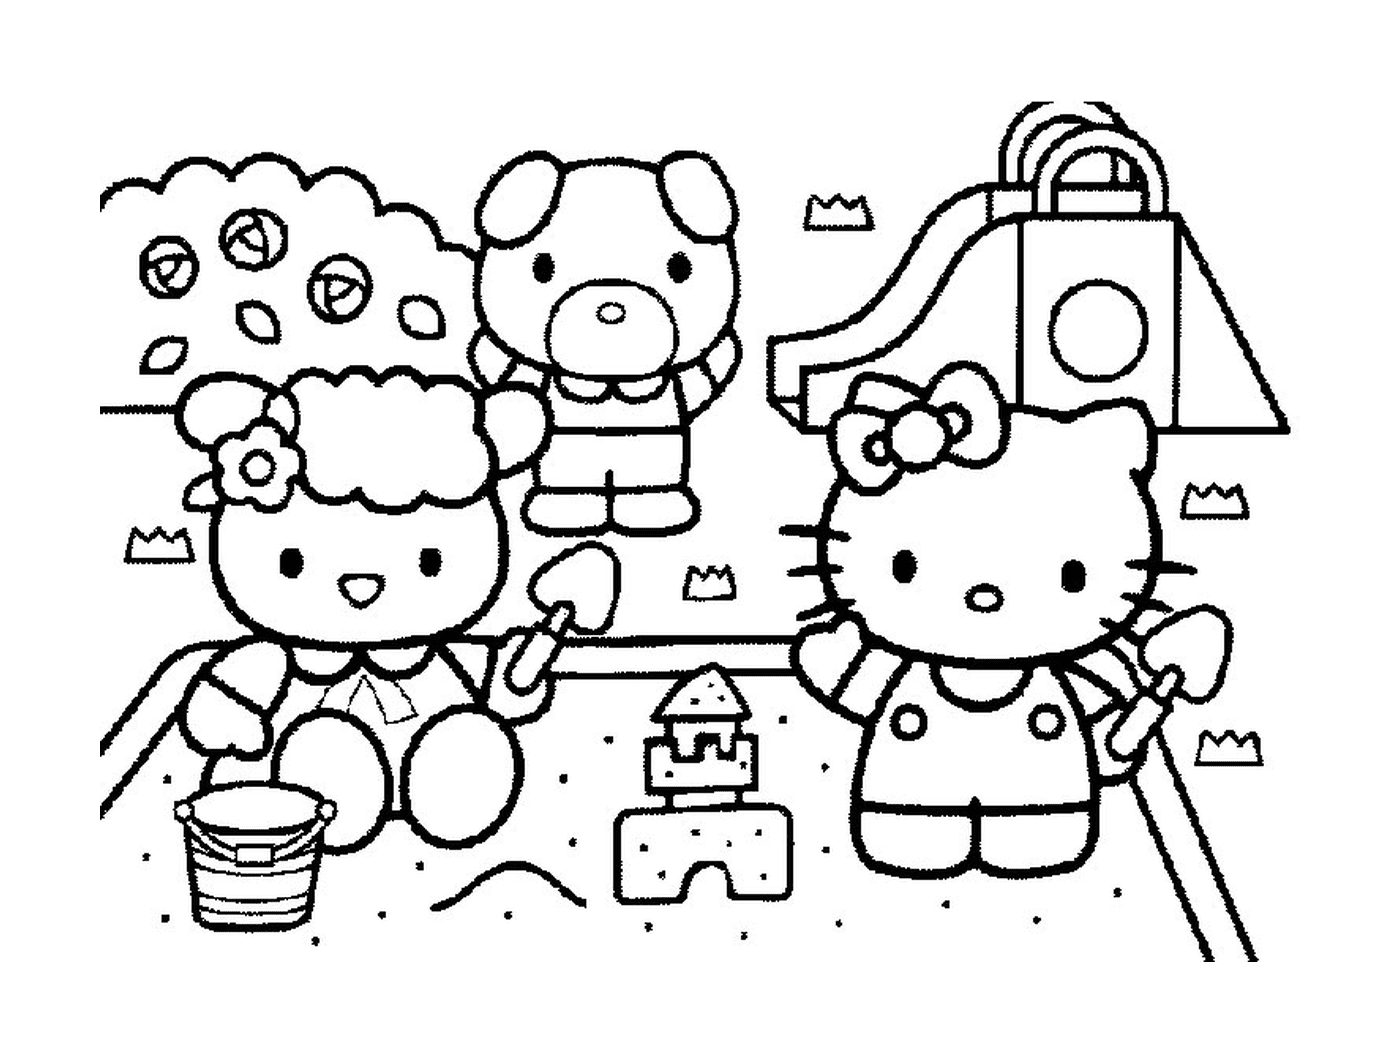  Grupo Hello Kitty e Teddy Bear 